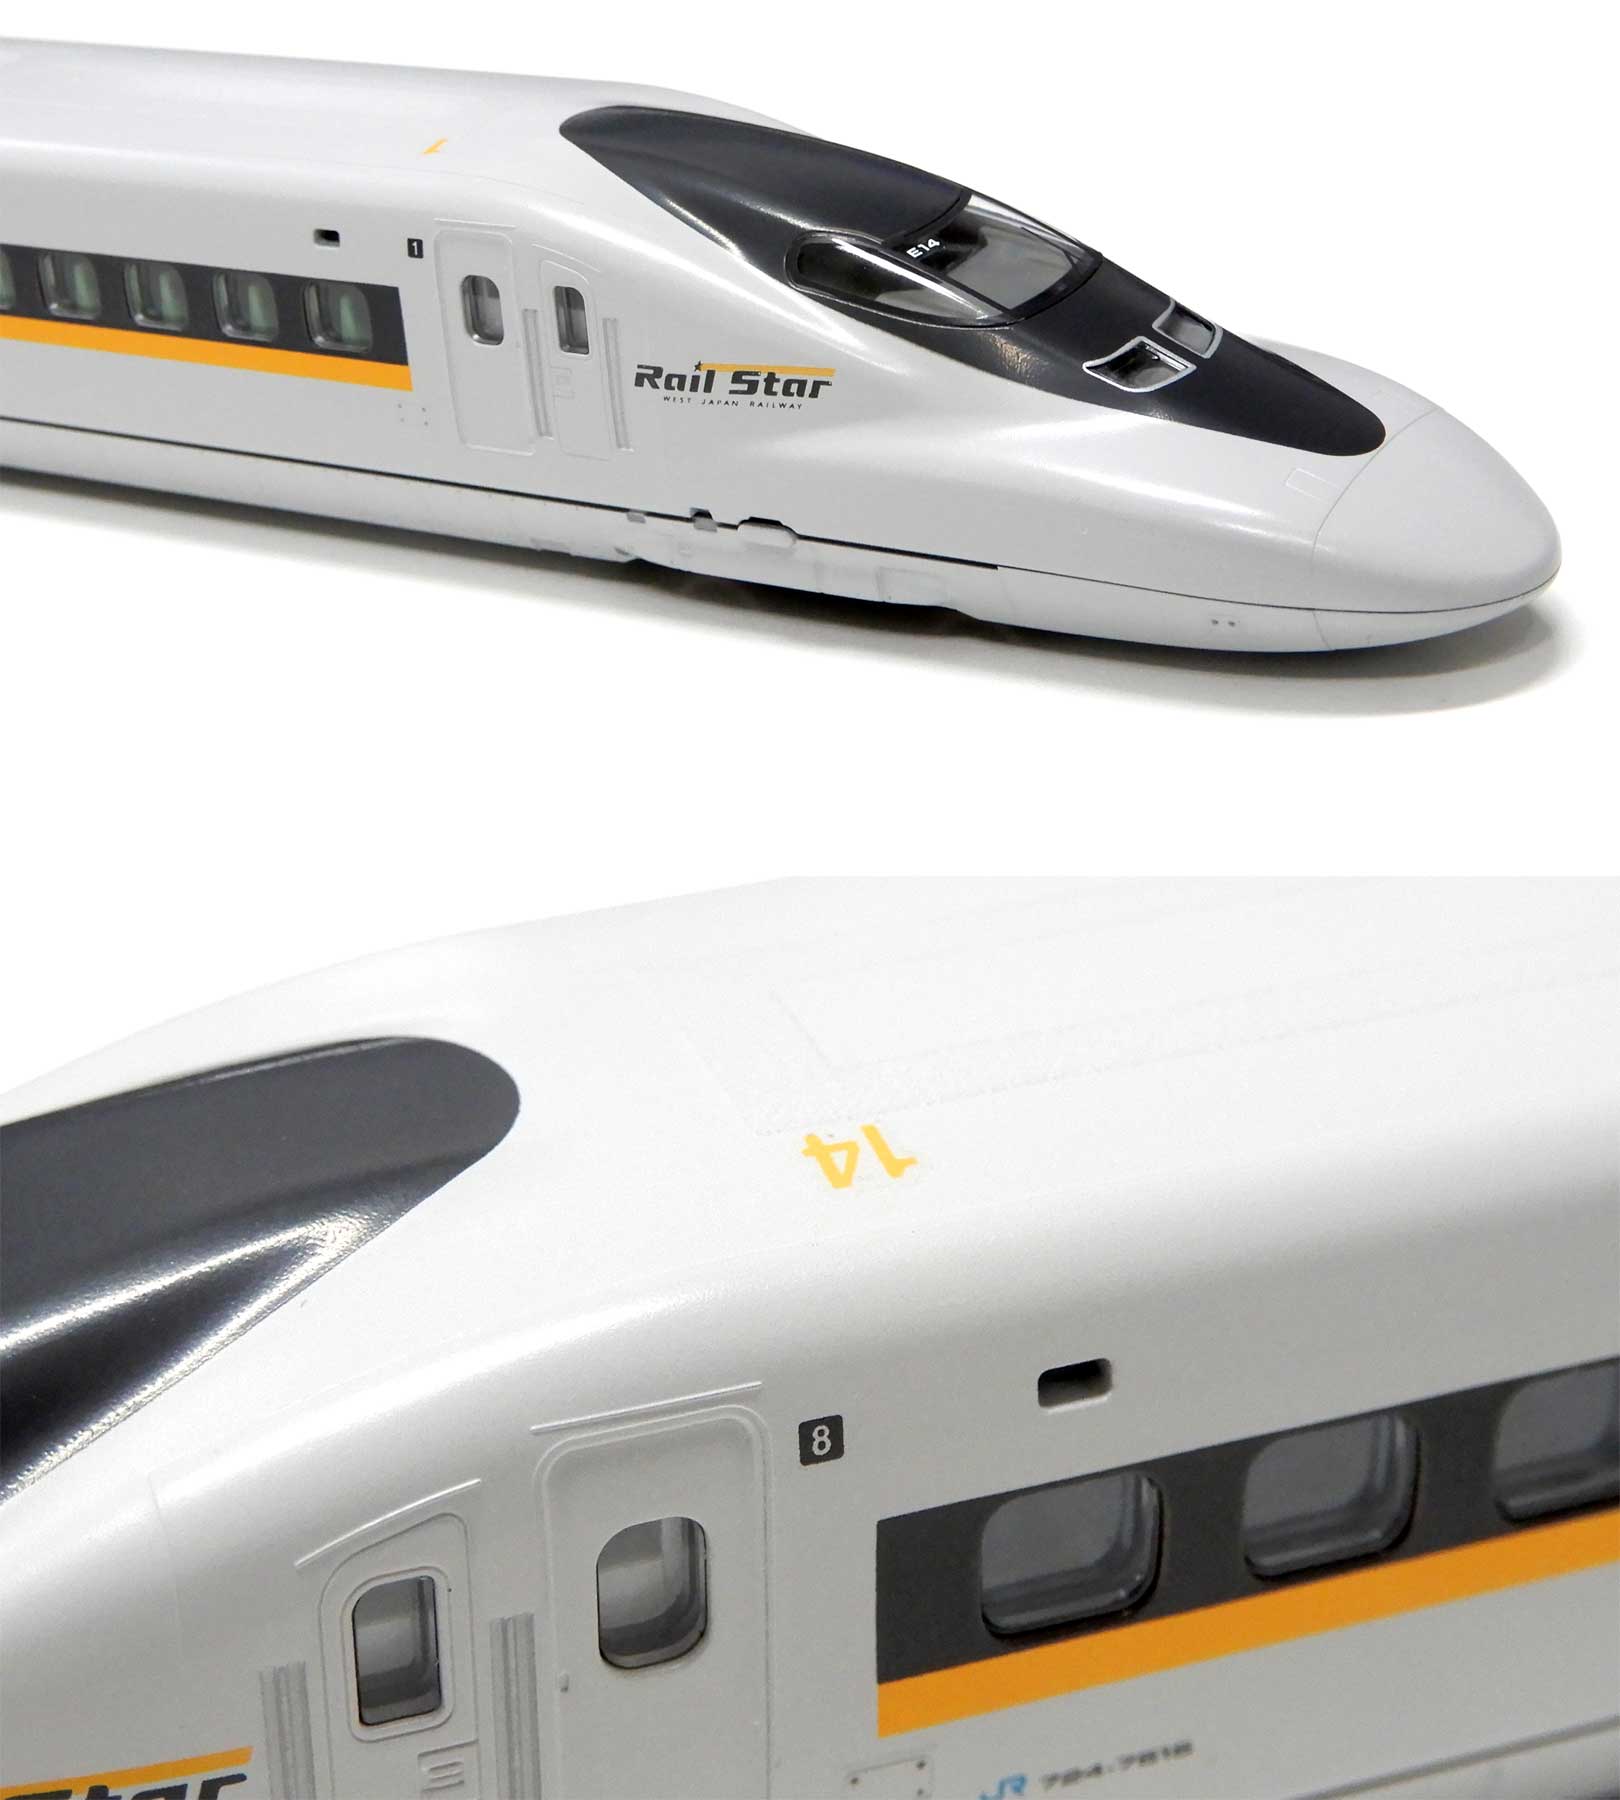 公式]鉄道模型(92822JR 700-7000系 山陽新幹線 (ひかりレールスター) 8